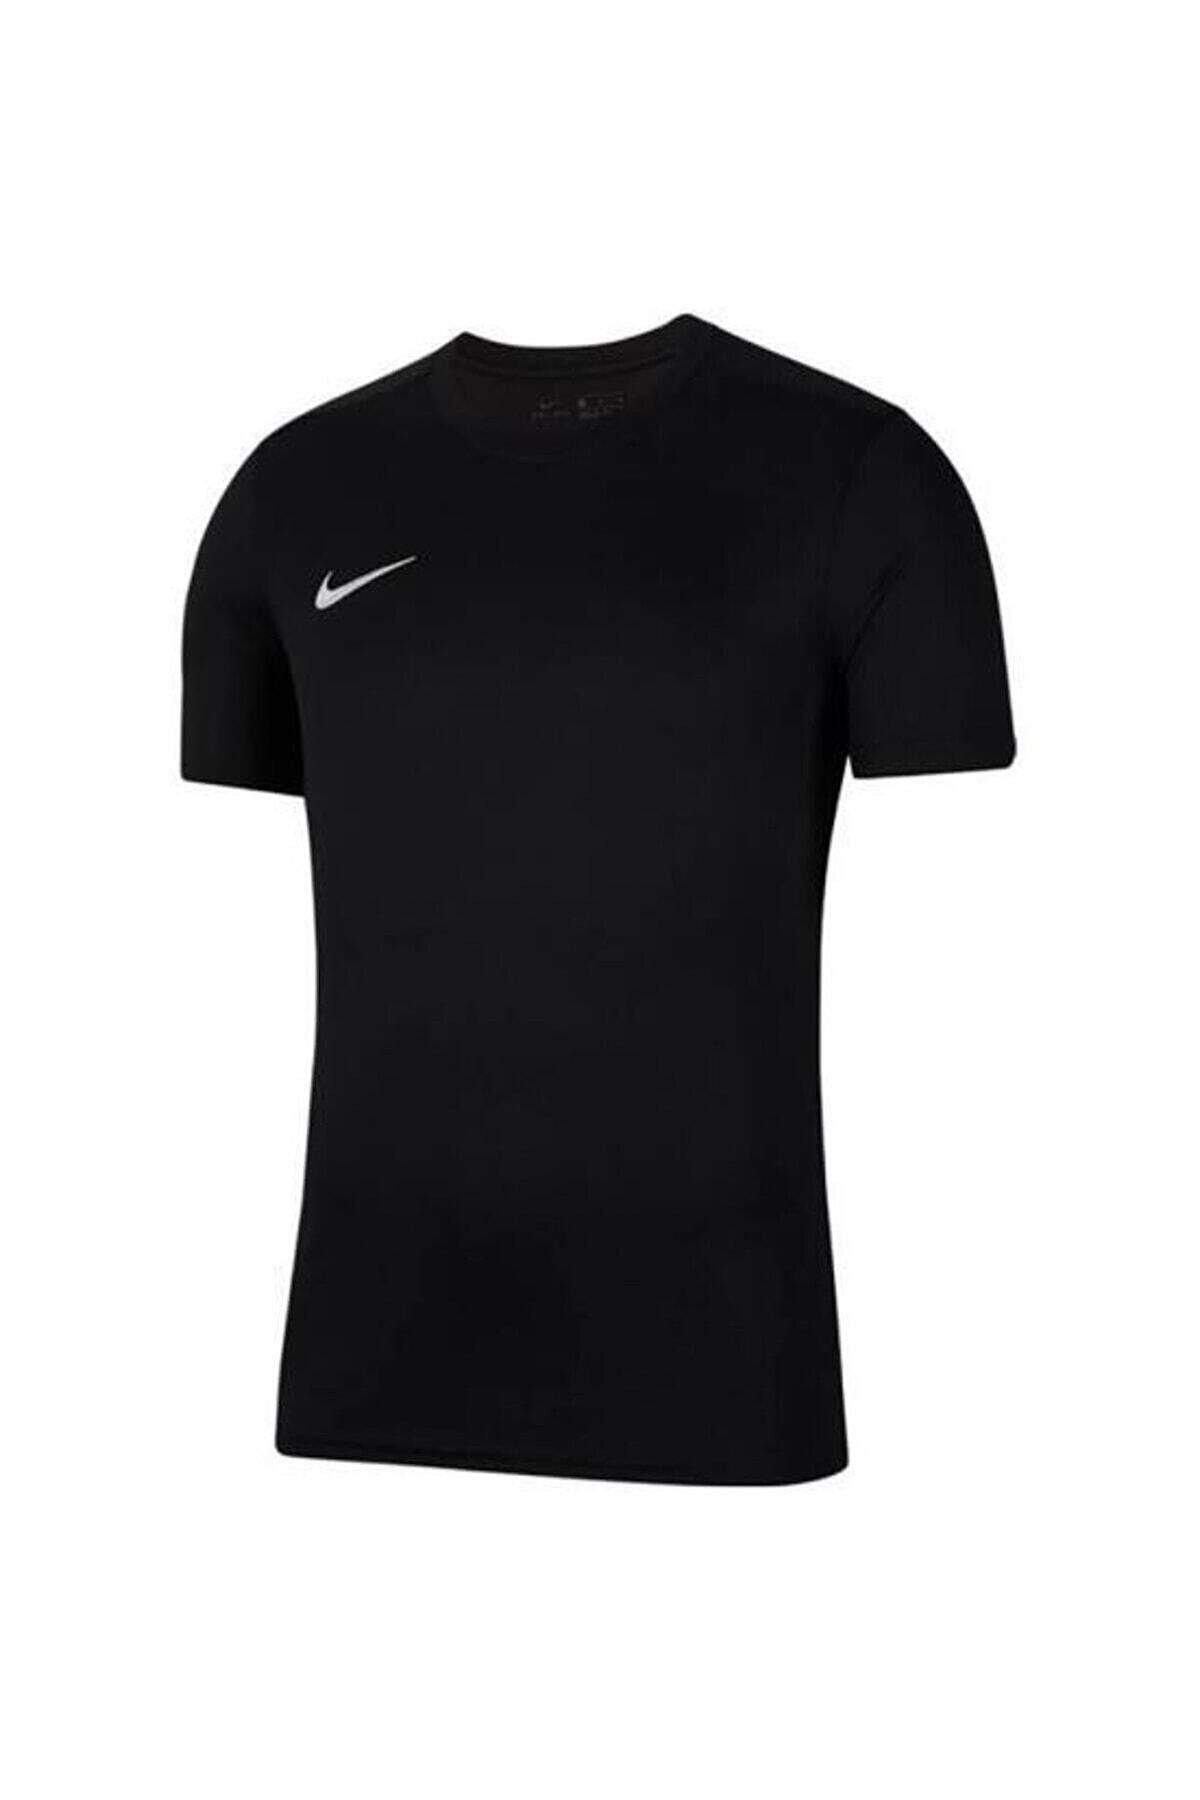 Nike Bv6708 Drı Fıt Park 7 Jby T-shirt